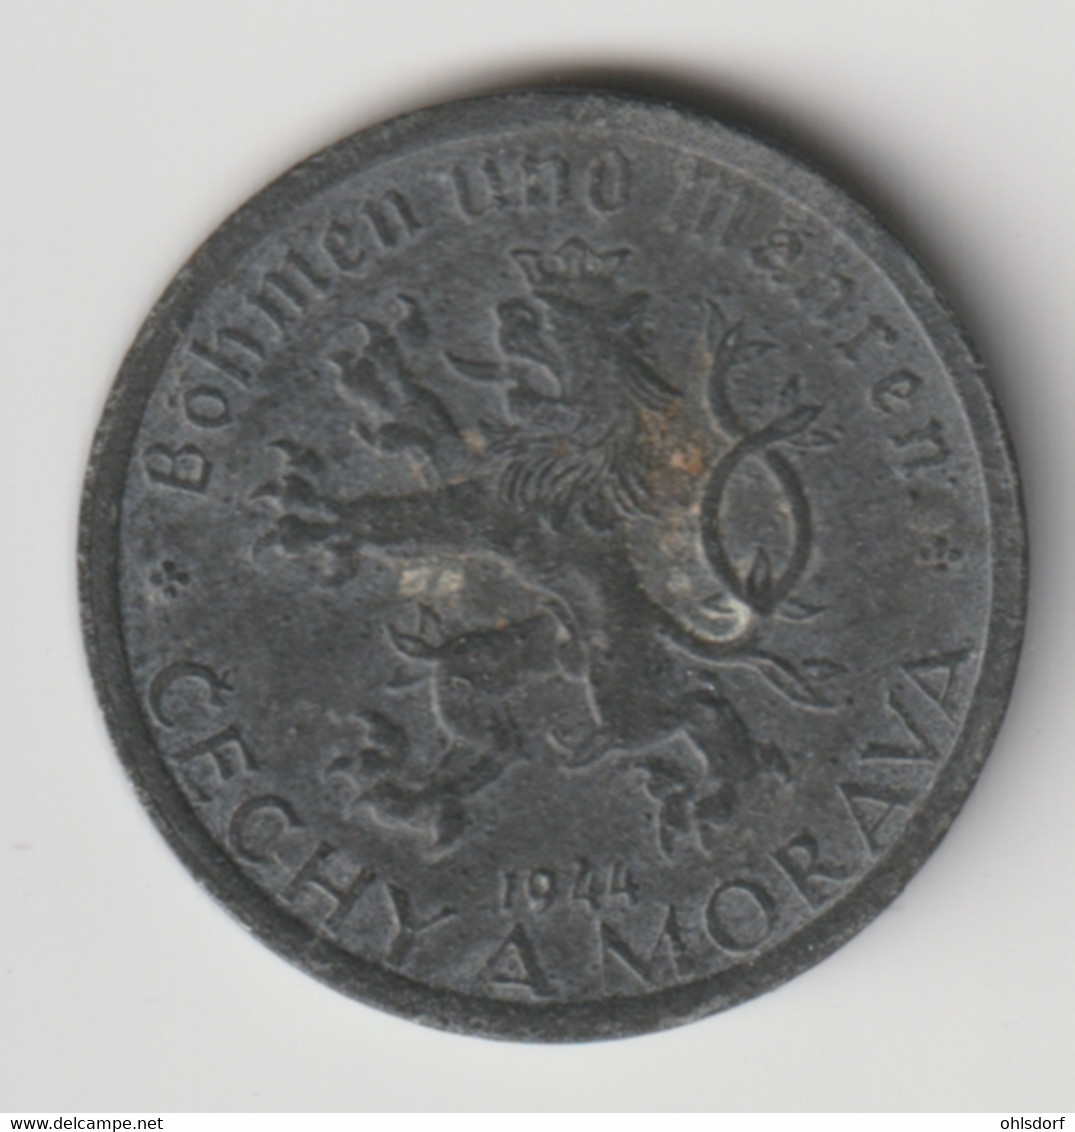 BÖHMEN UND MÄHREN 1944: 20 Haleru, KM 2 - Military Coin Minting - WWII